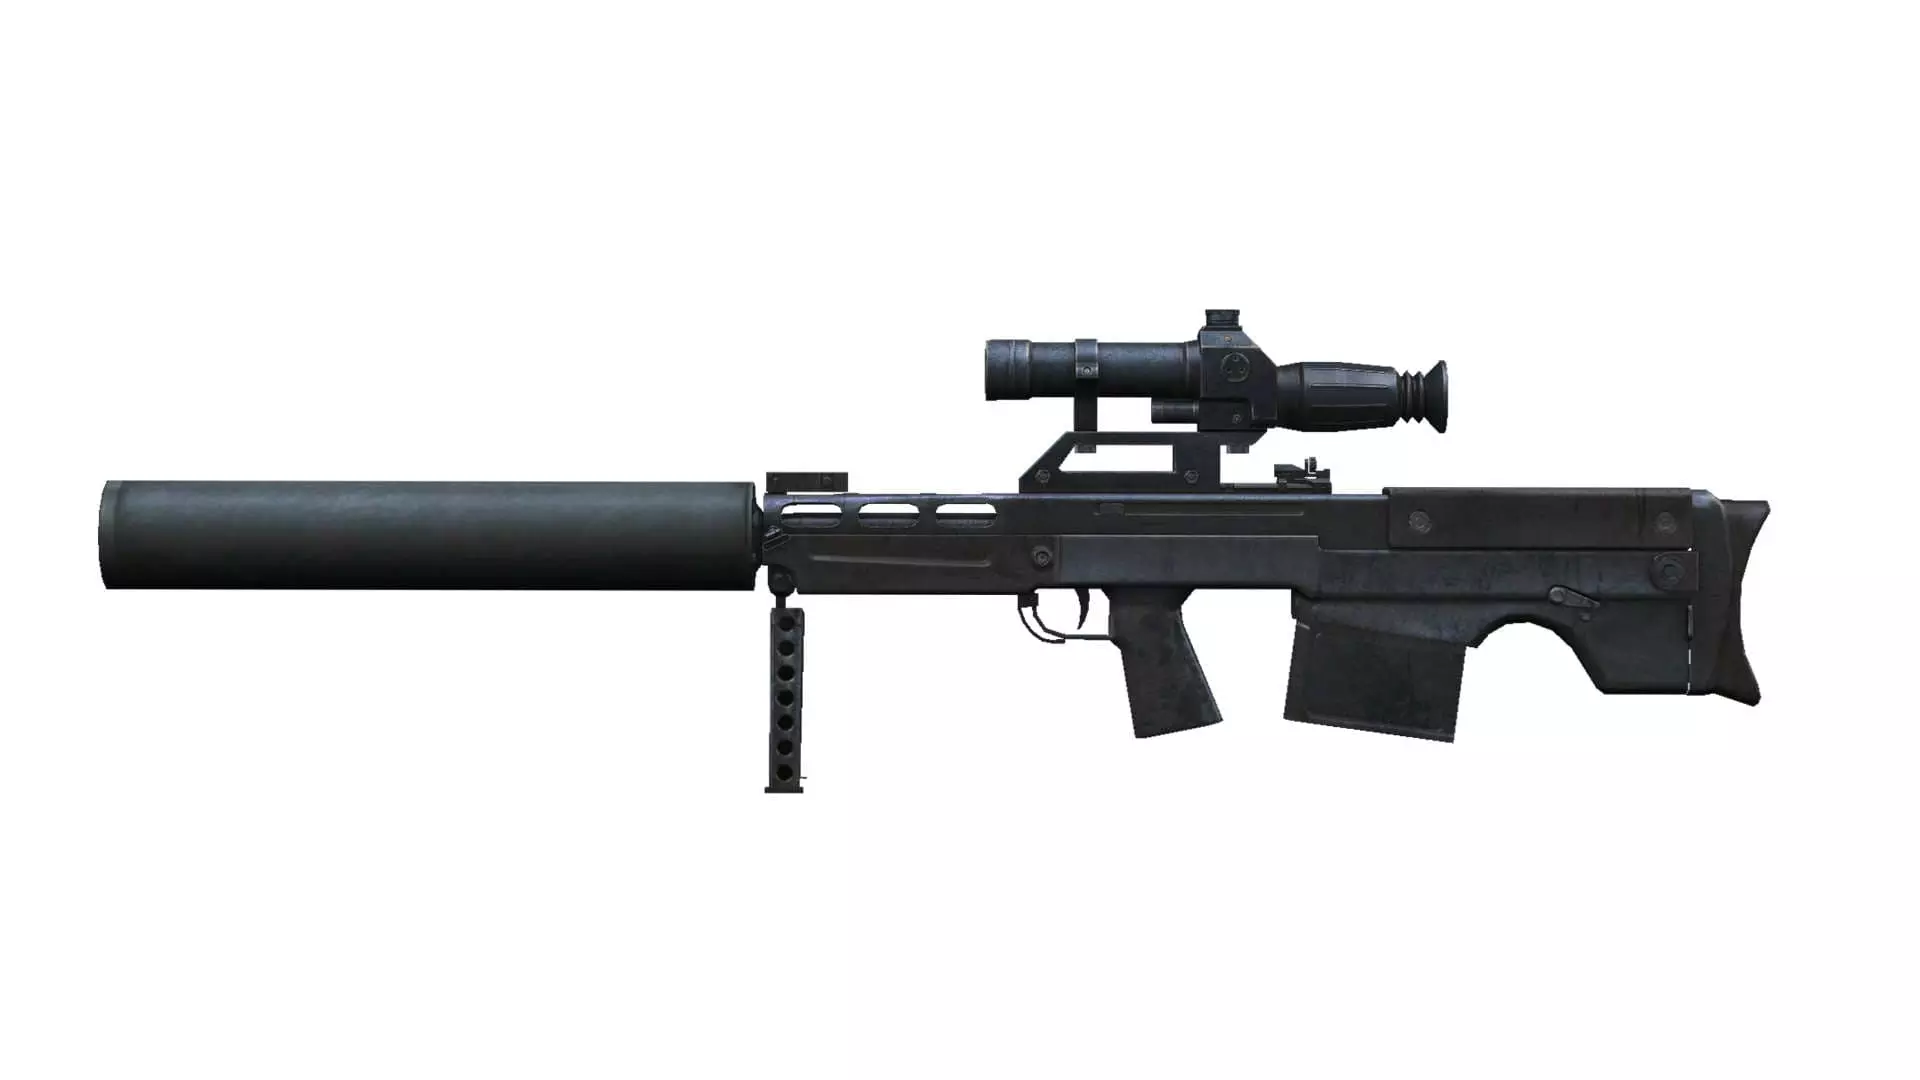 Laser tag sniper rifle VSSK Vyhlop special forces